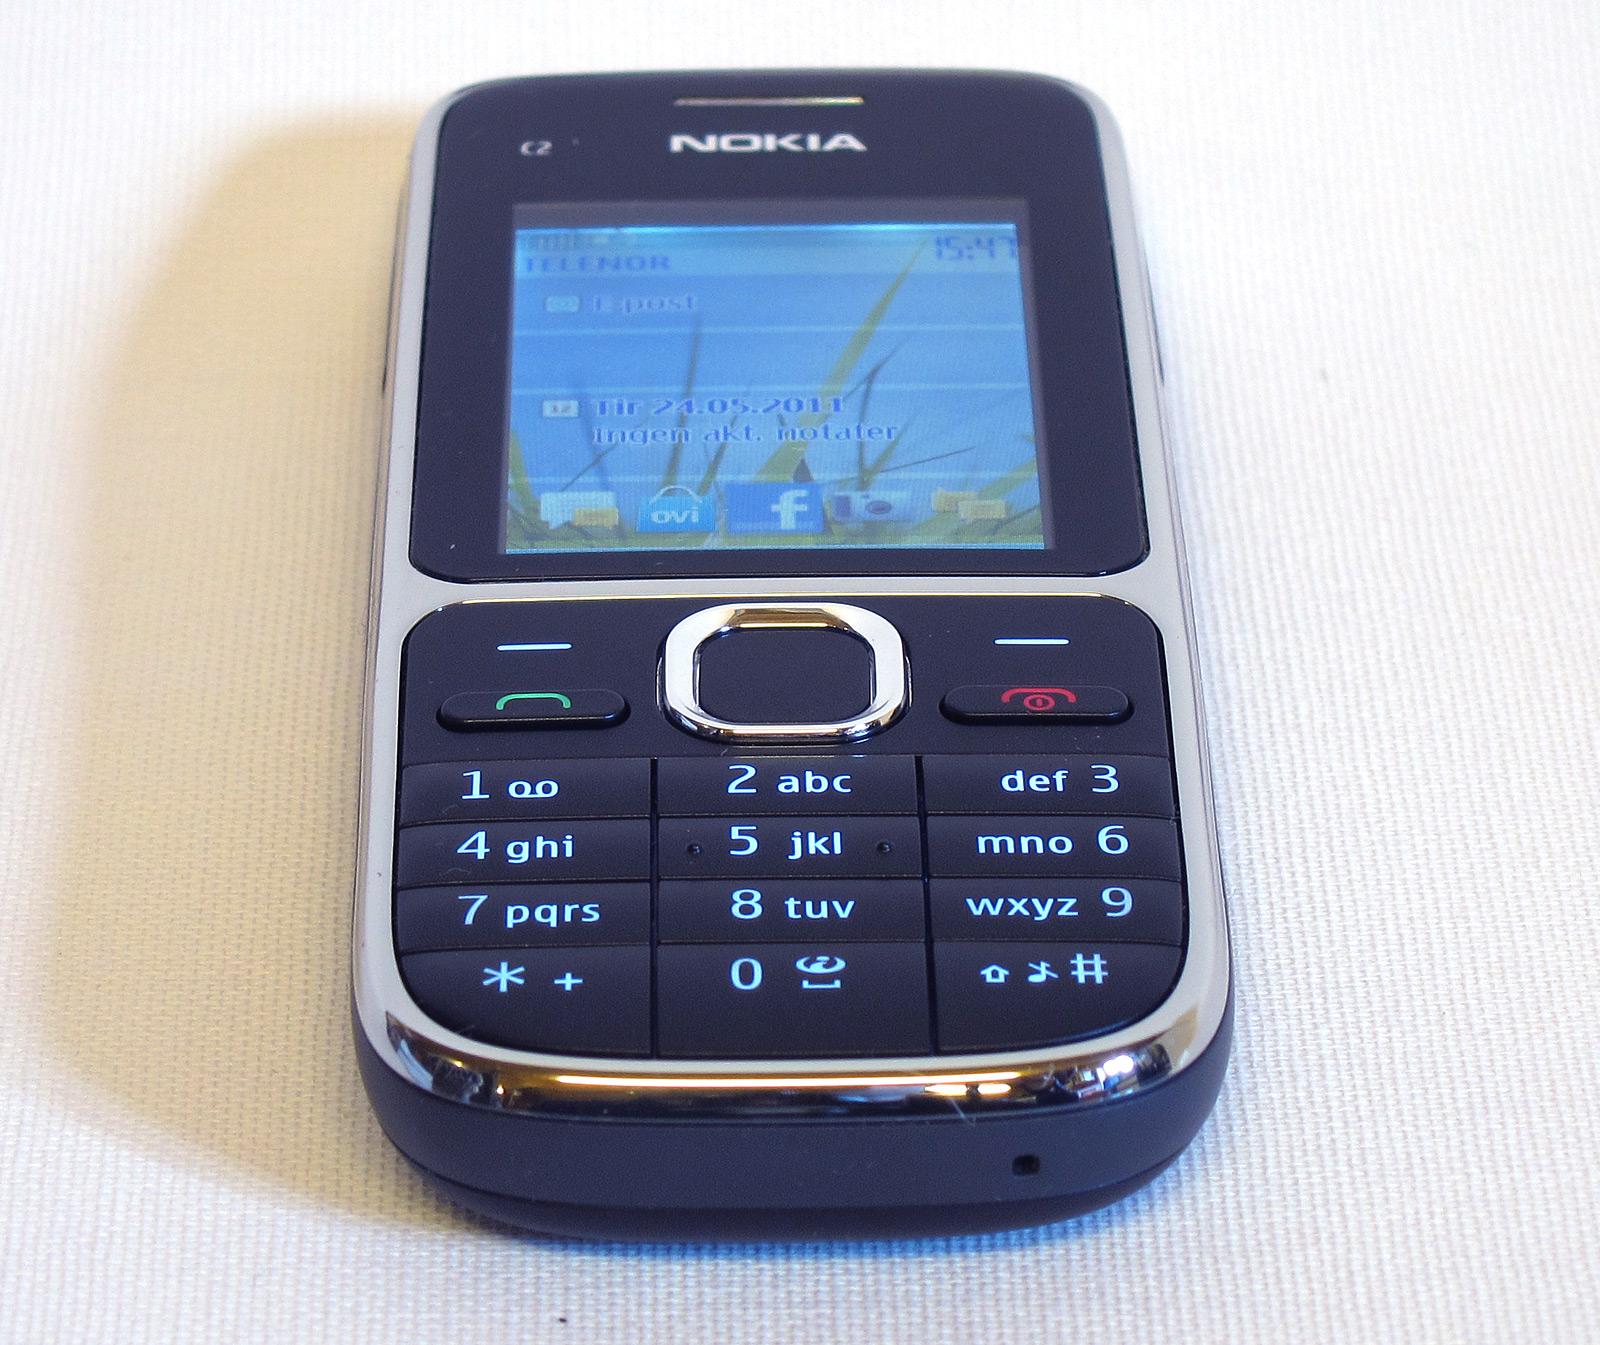 Tastene kommer først for Nokia C2.